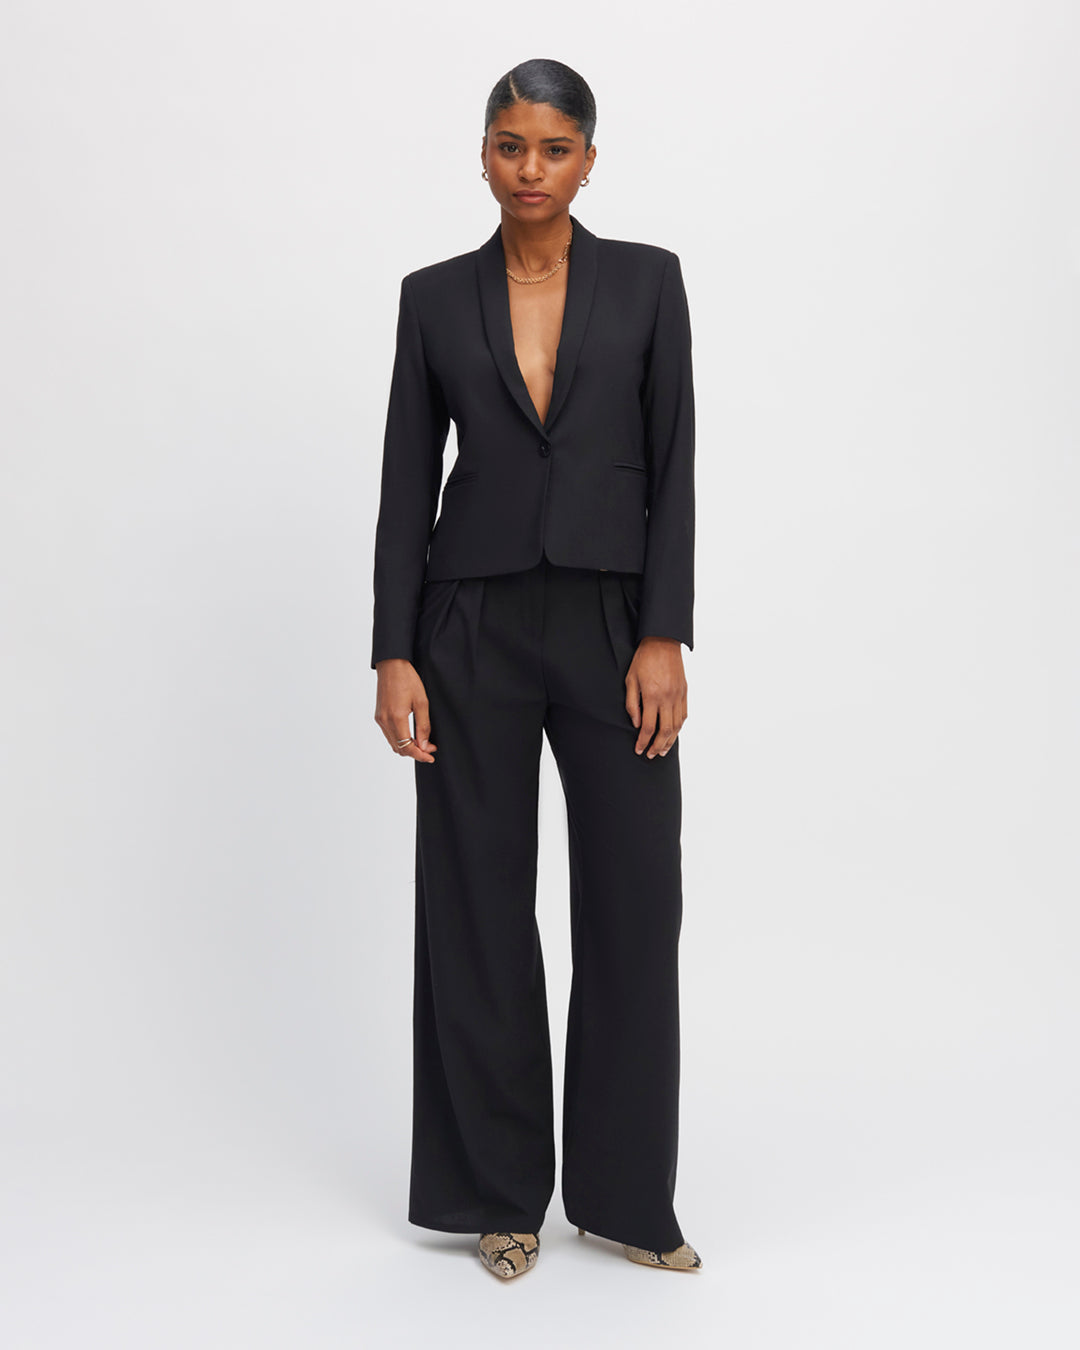 Tailor-pants-black-Palazzo-cut-High-waist-Details-double-pleated-waist-Low-leg-XXL-Dessine-leg-waist-Belt-buckle-17H10-tailors-for-women-paris-